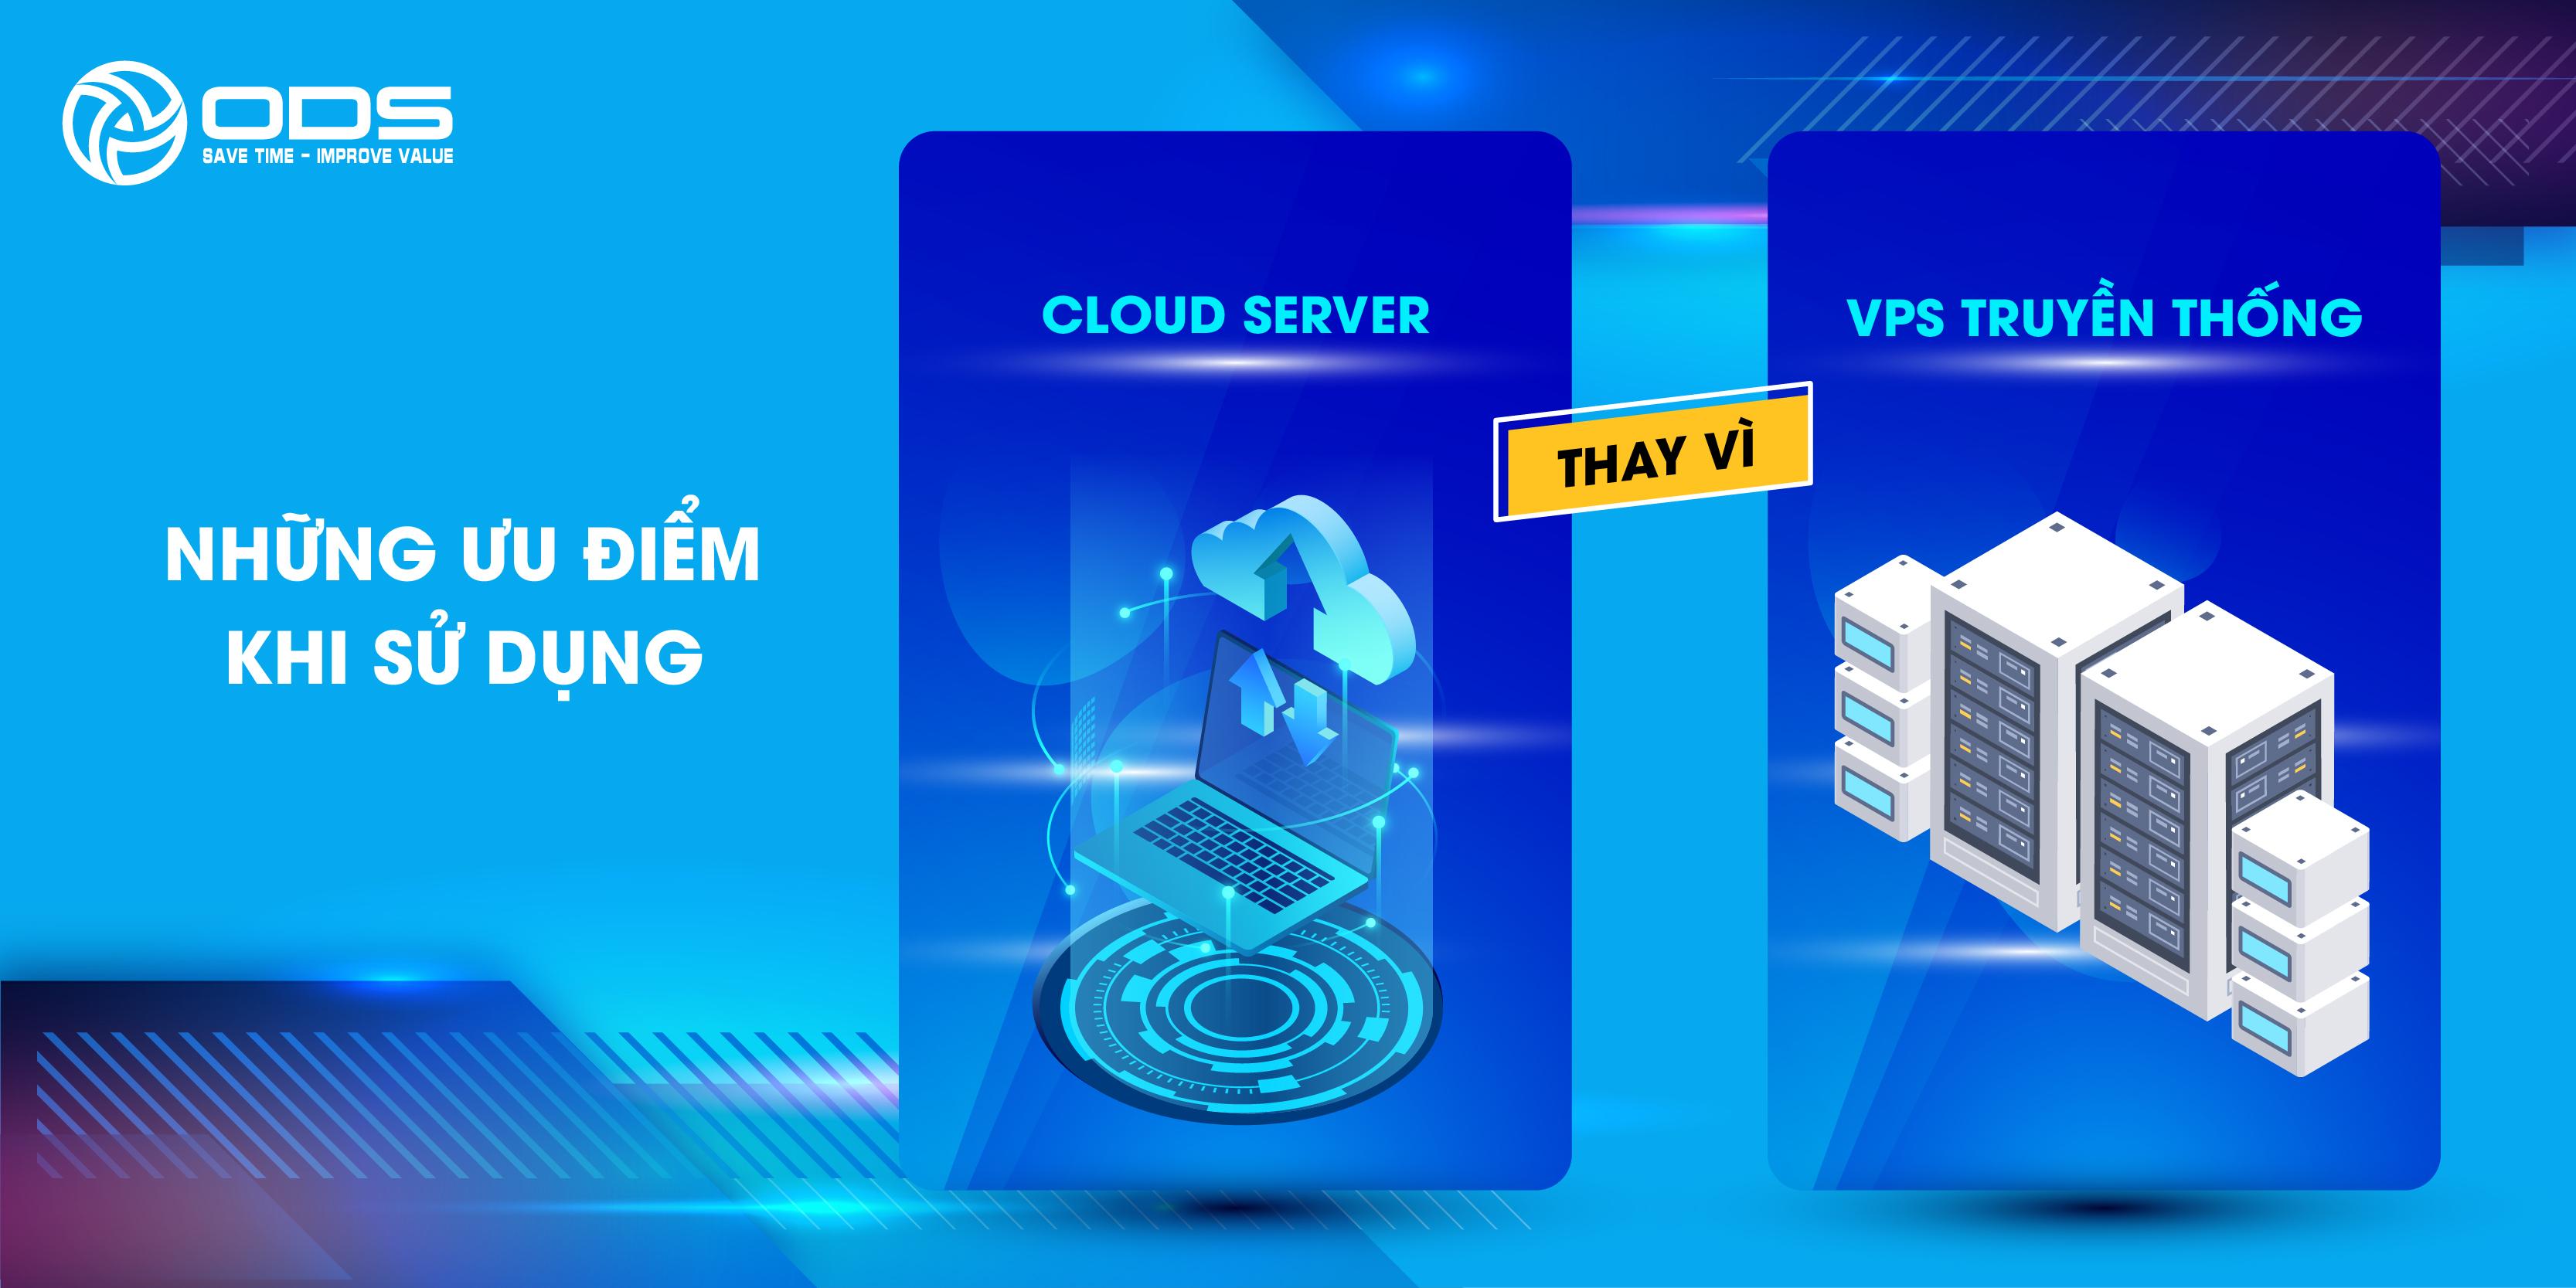 Có rất nhiều điểm khác biệt giữa dịch vụ VPS truyền thống và Cloud Server